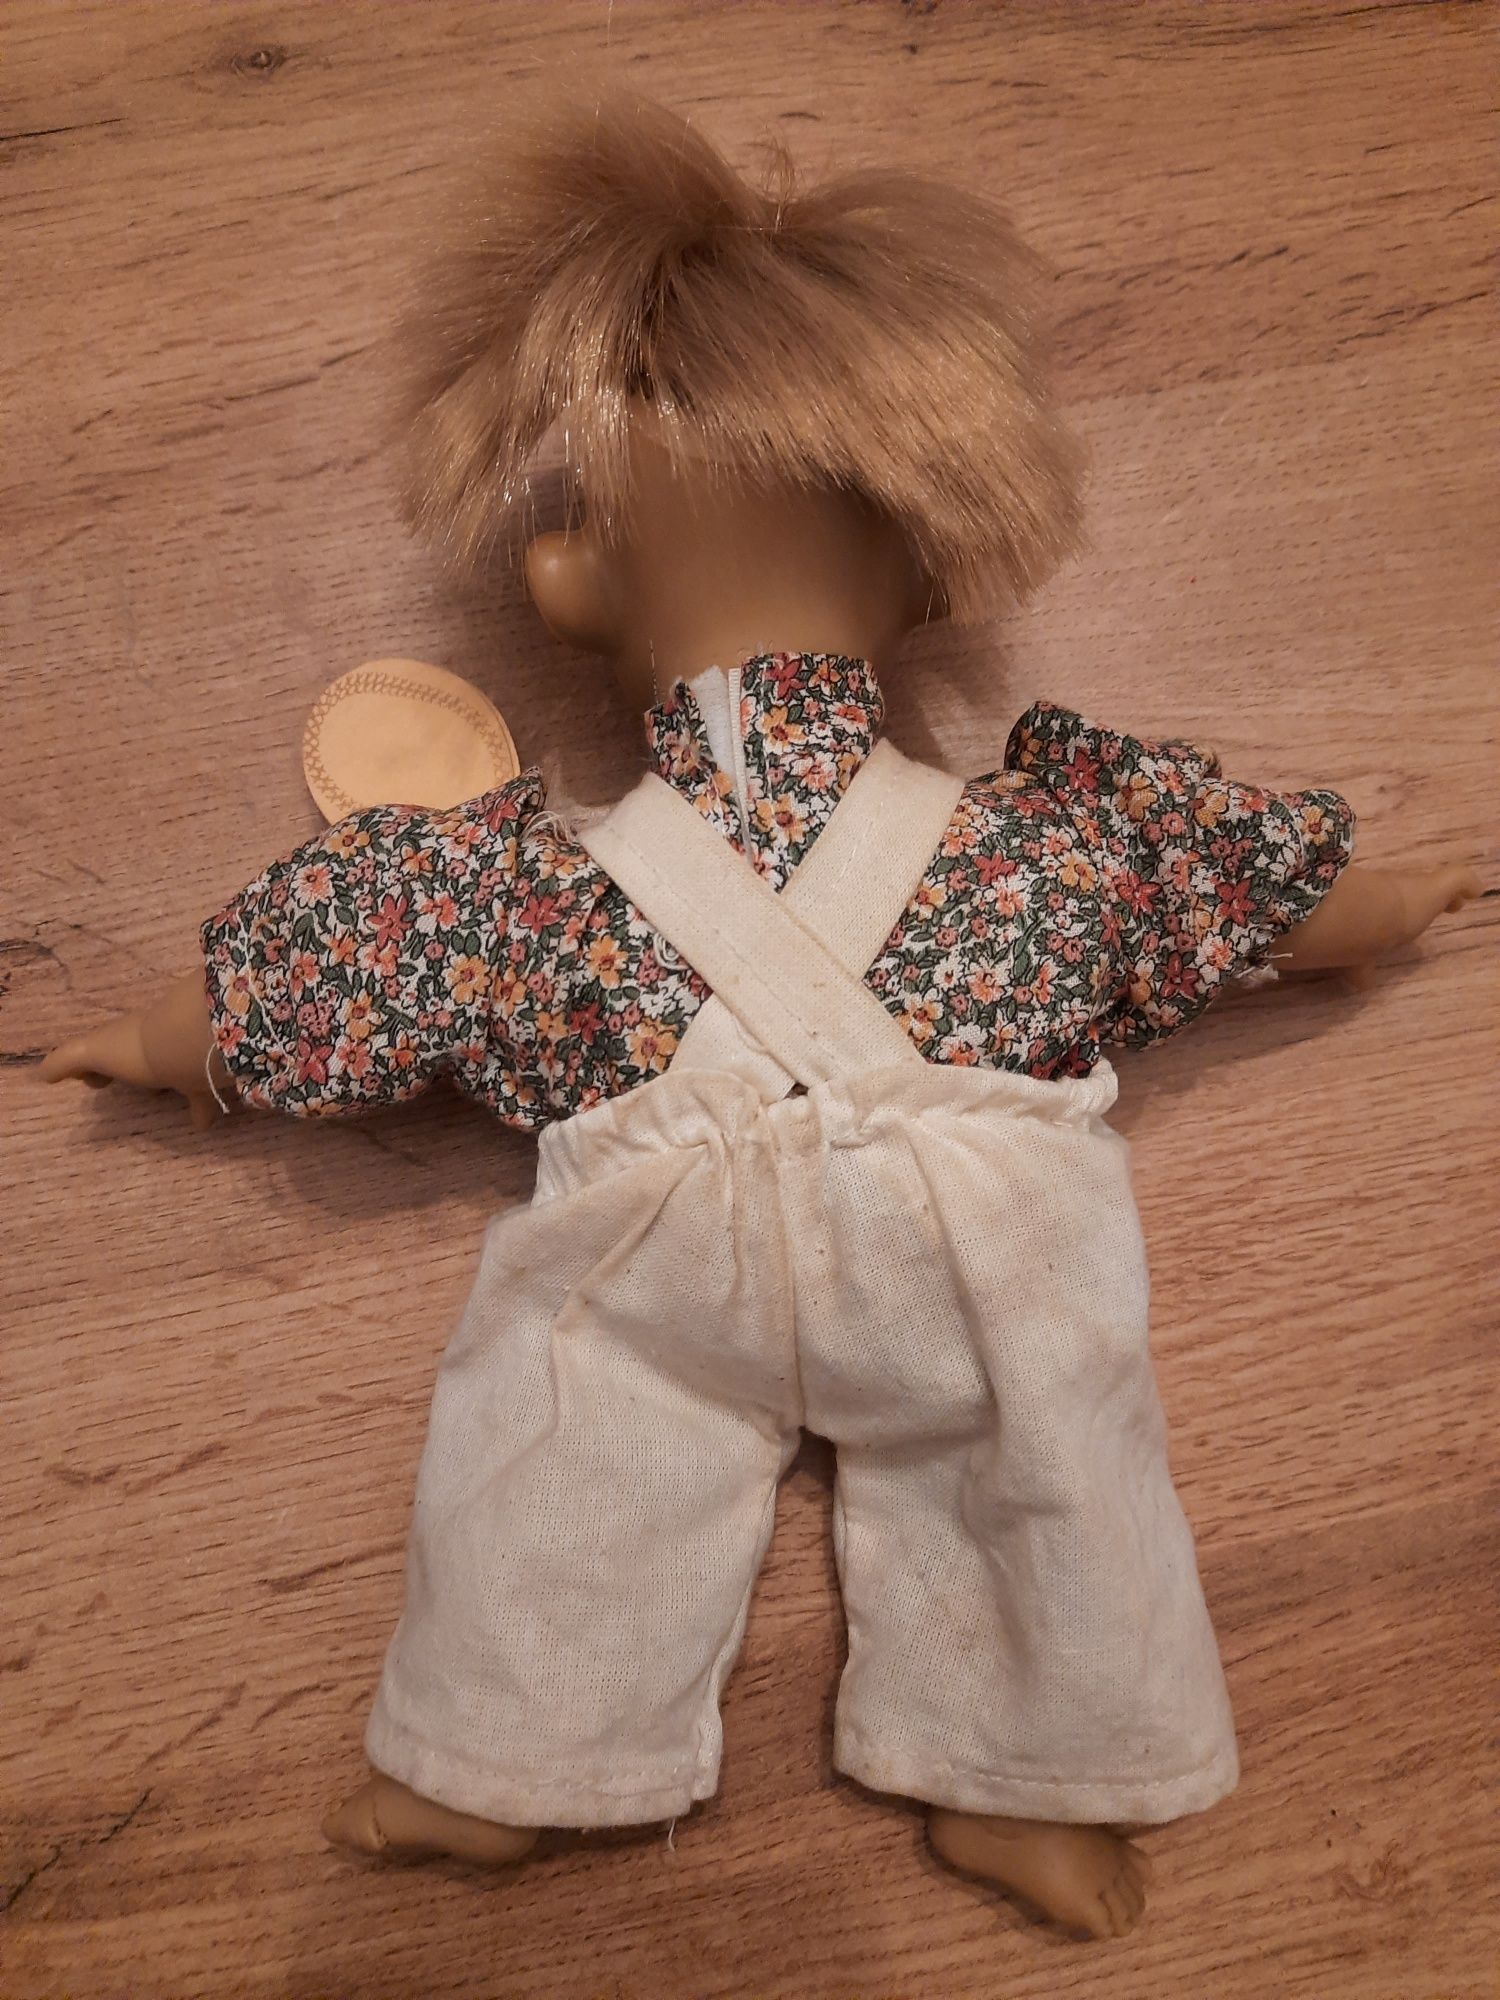 Stara zabytkowa niemiecka lalka szmaciana Kōln Frederike Hertz